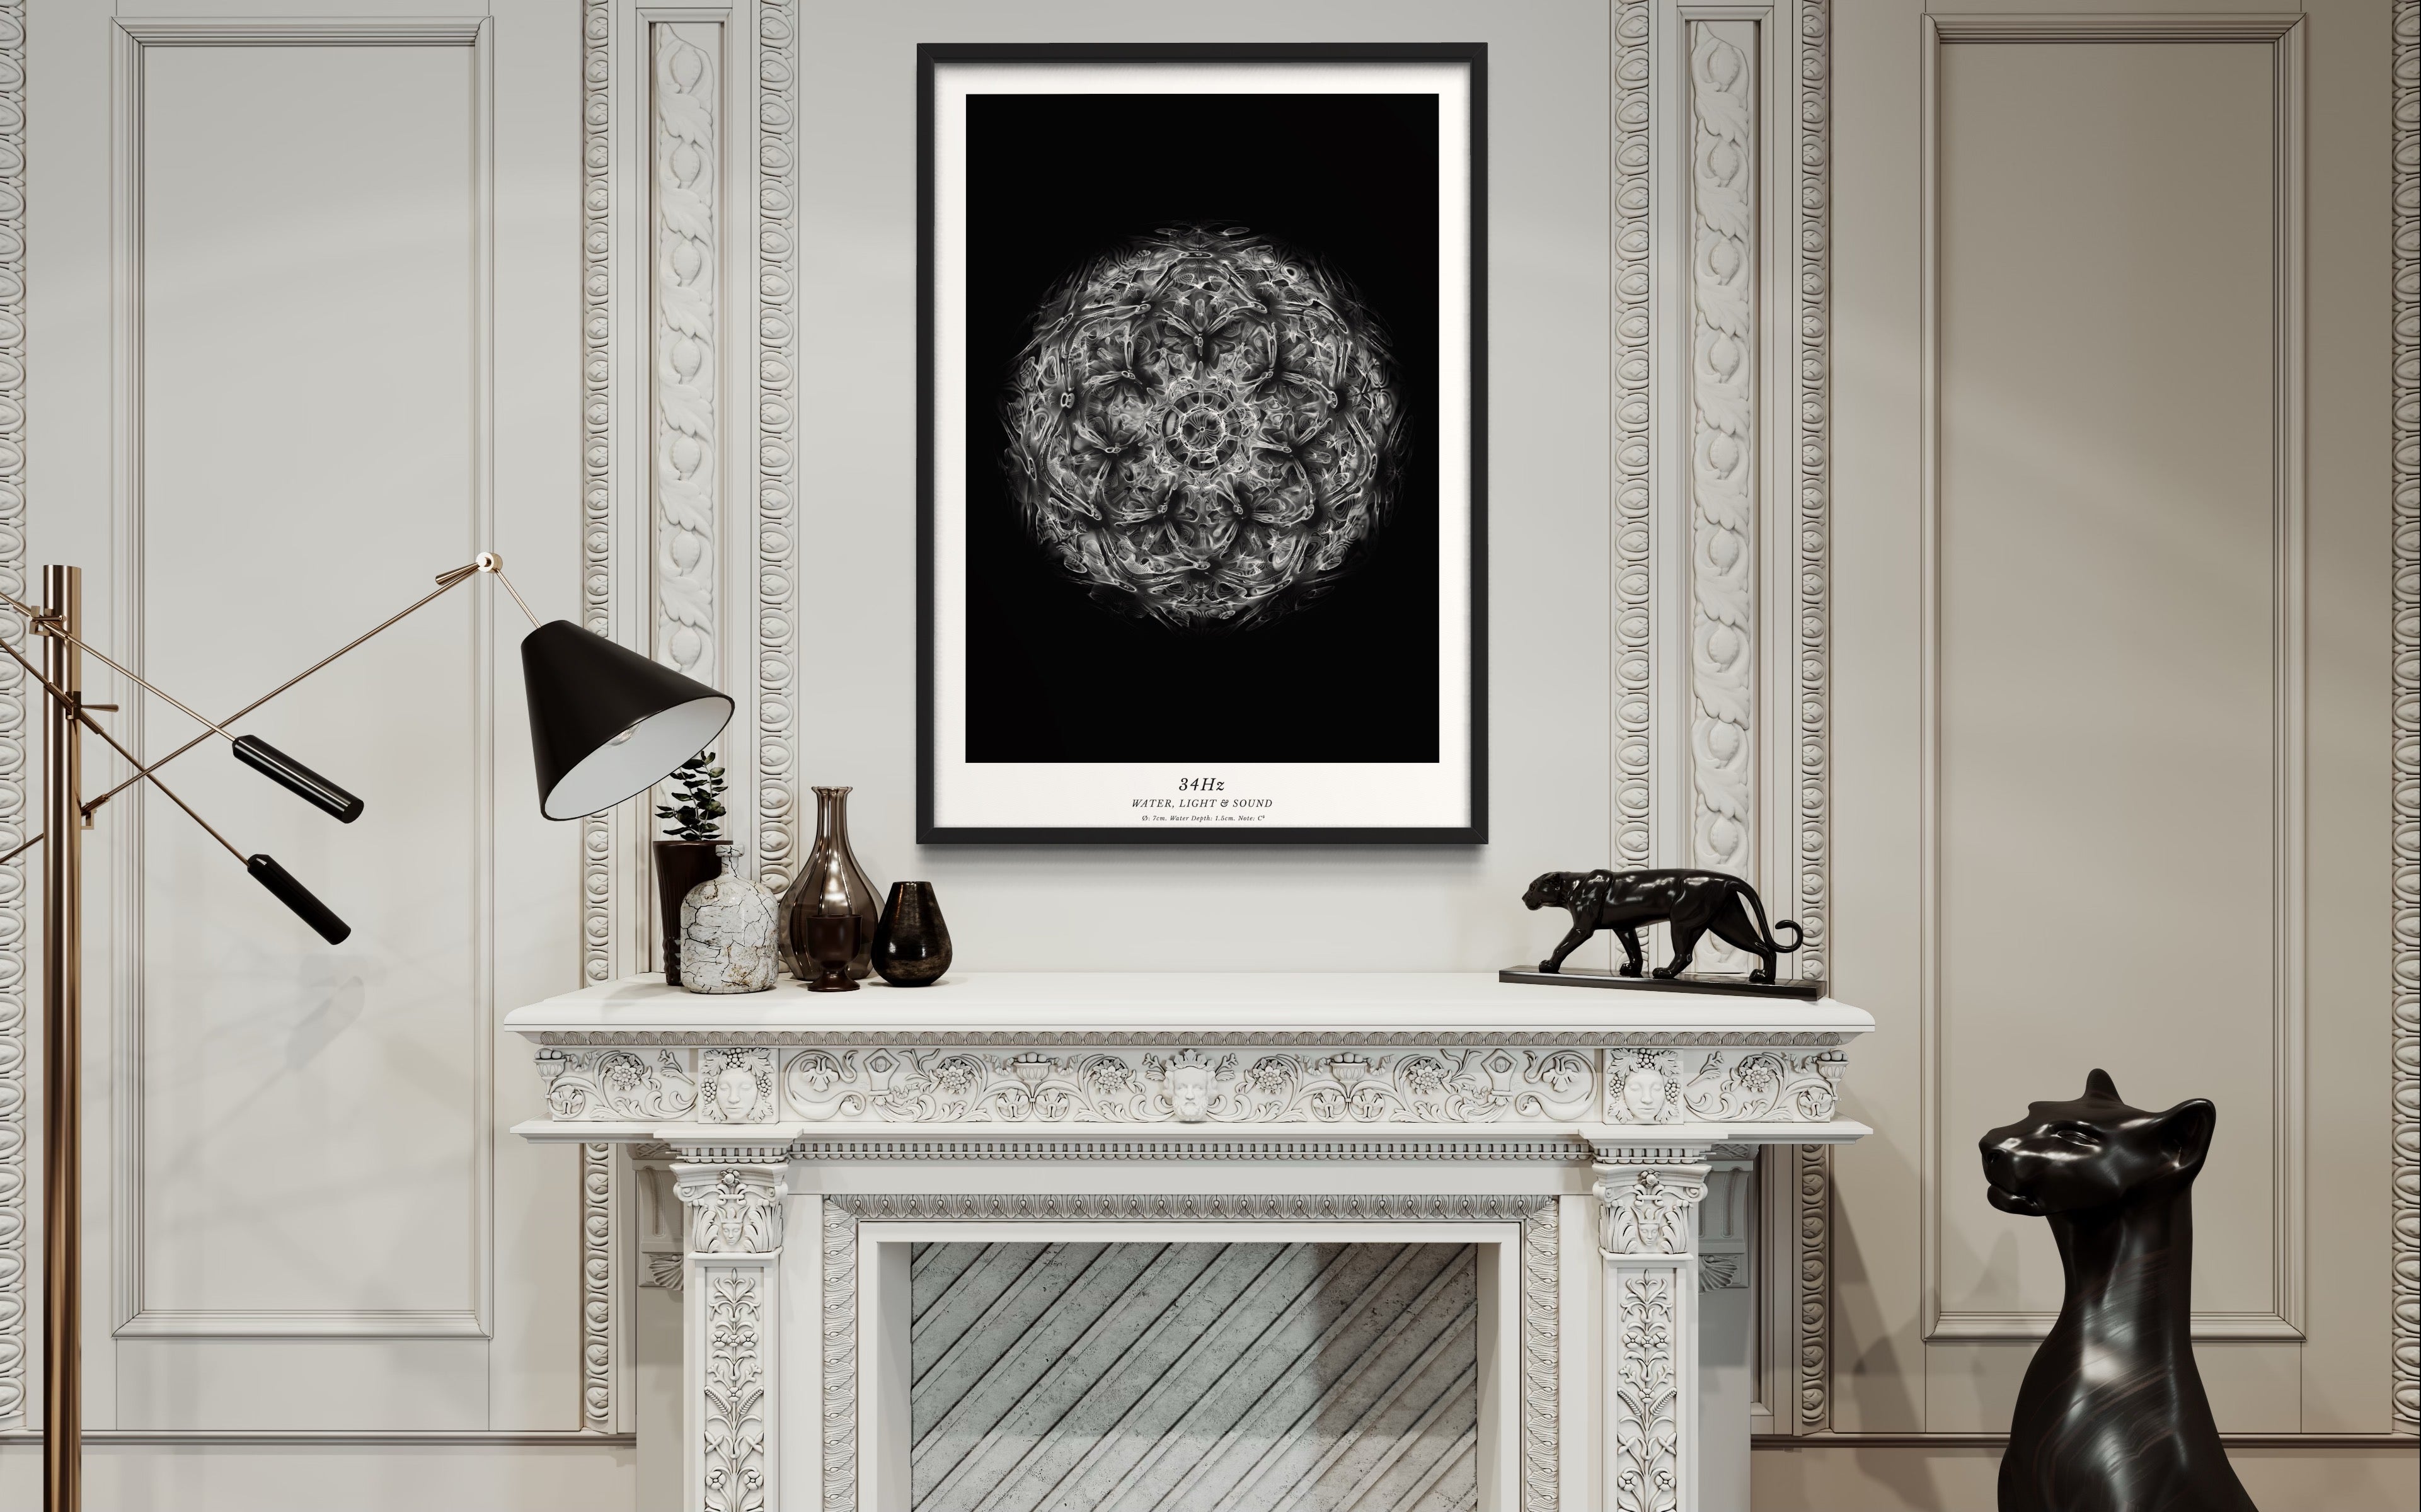 cymatics photo print B/W - 34Hz - Journey of Curiosity